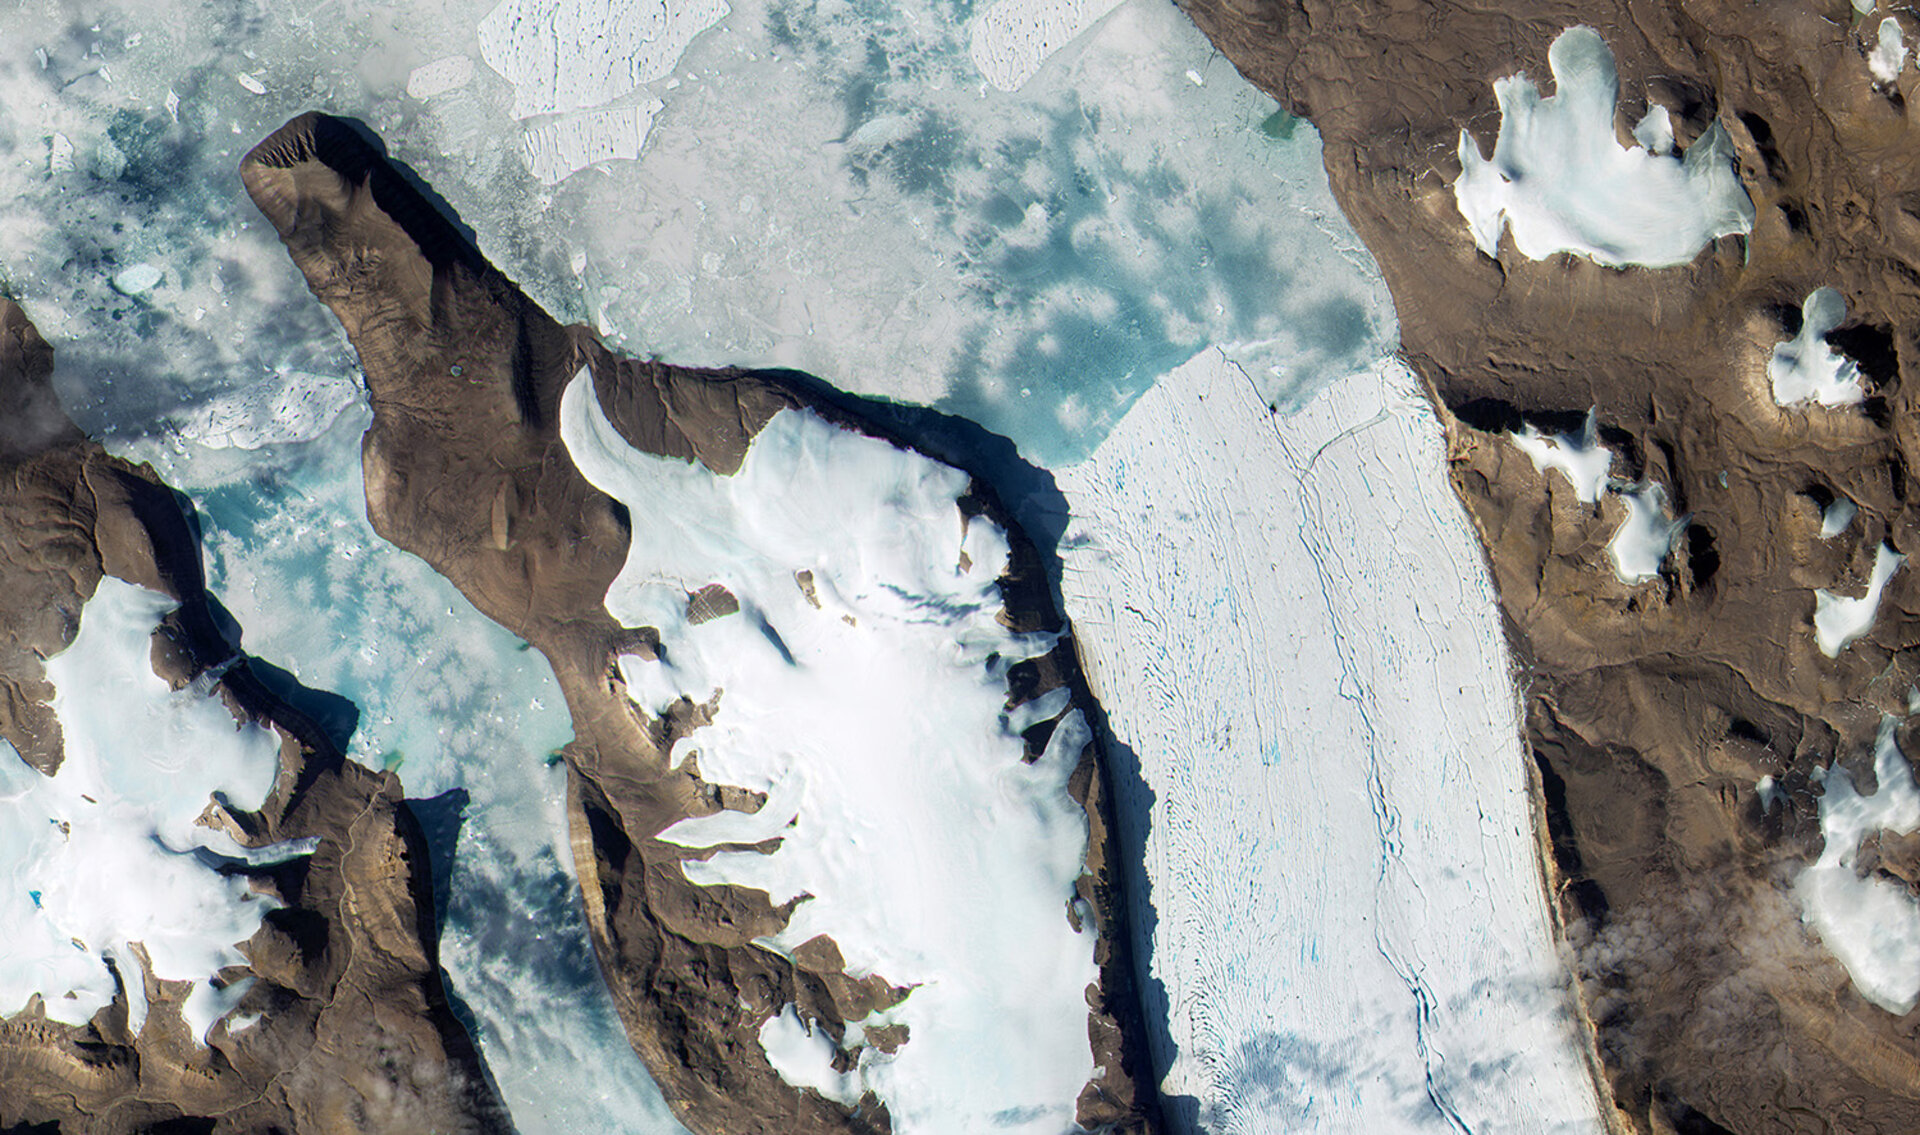 Greenland glaciers